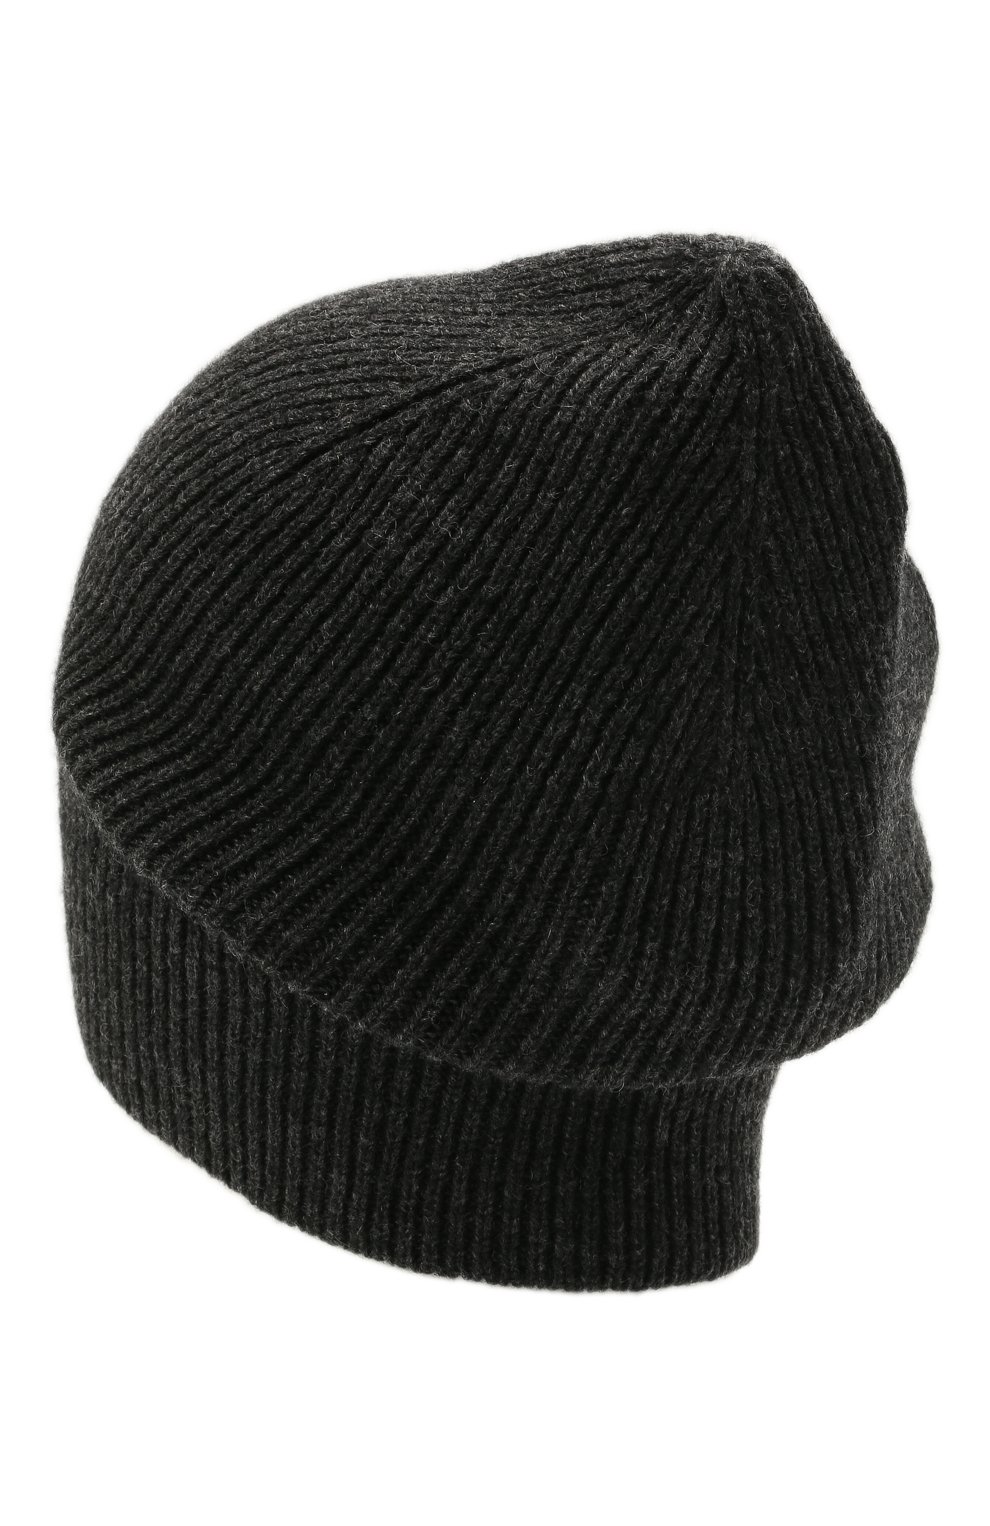 Мужская кашемировая шапка INVERNI темно-серого цвета, арт. 0122 CM | Фото 2 (Материал: Текстиль, Кашемир, Шерсть; Кросс-КТ: Трикотаж)